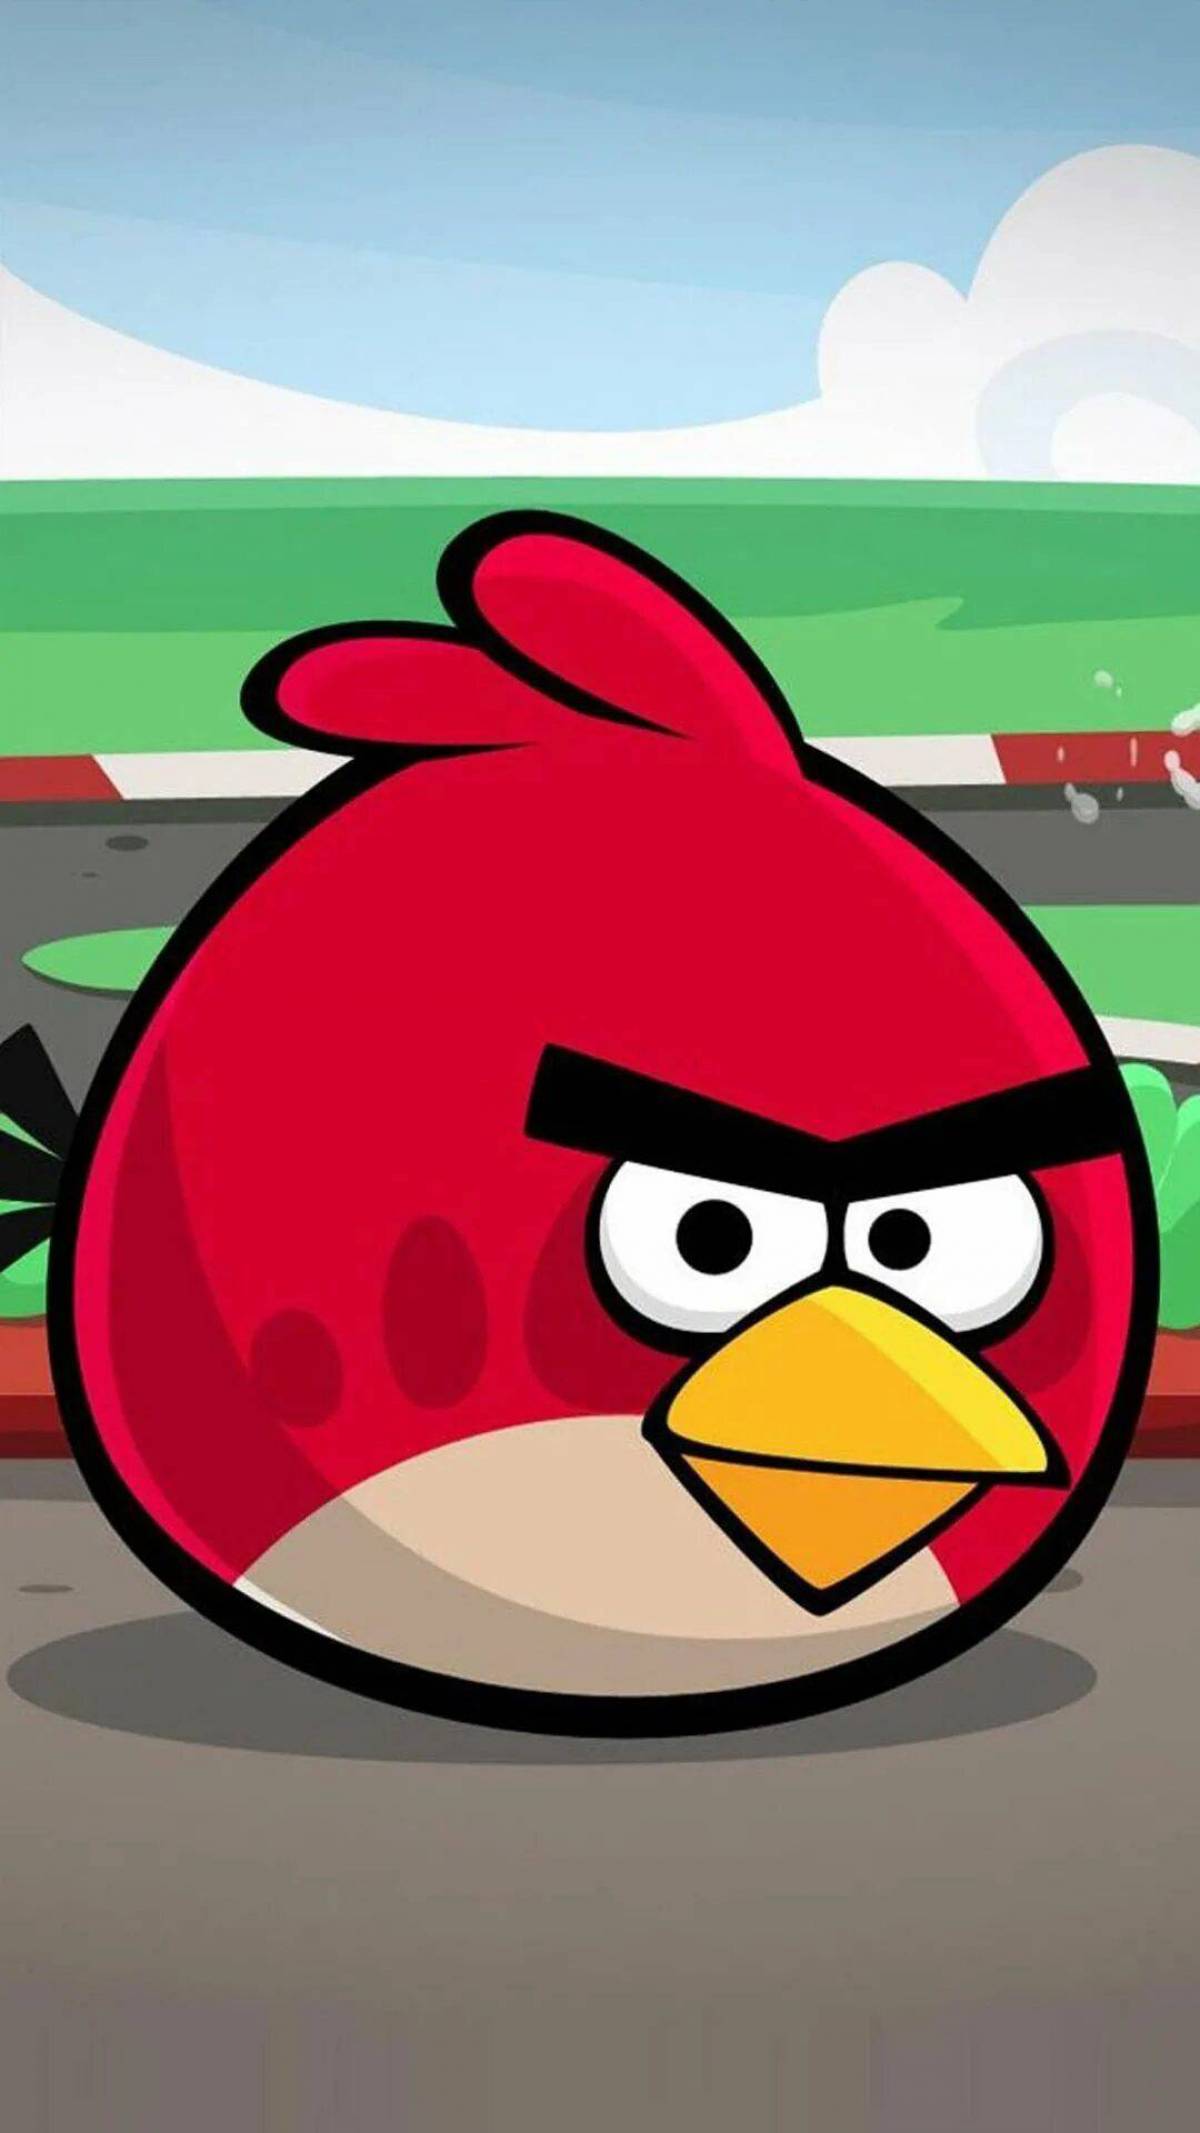 Бесплатный энгриберц. Энгри бердз злые птички. Игра Angry Birds Red. Энгри берс злая птичка. Ред из Энгри бердз из игры.